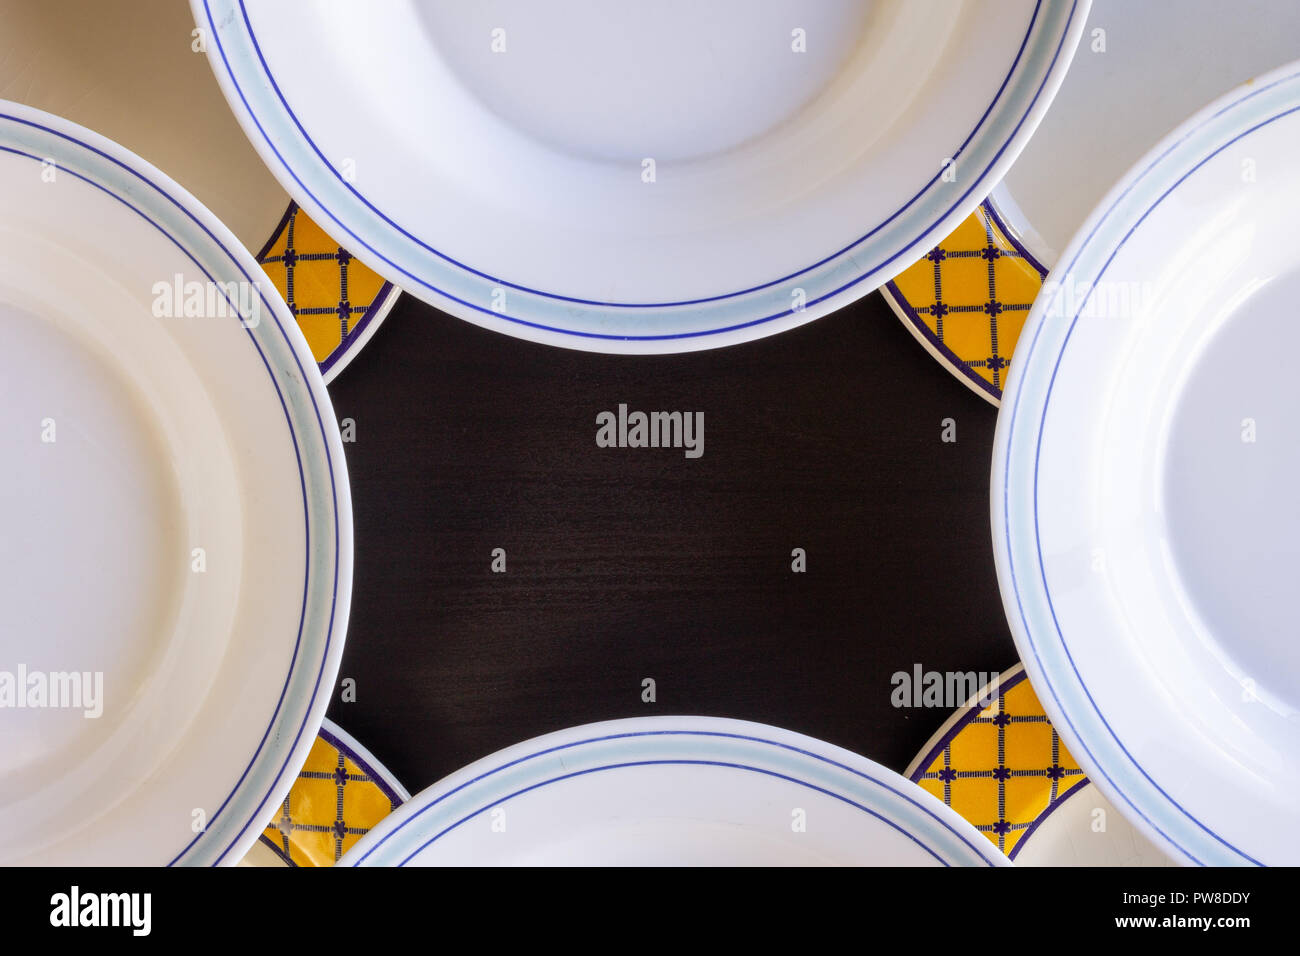 https://c8.alamy.com/compes/pw8ddy/un-fondo-de-madera-negra-con-cuatro-platos-vacios-en-blanco-y-amarillo-y-azul-y-blanco-de-cuatro-platos-vacios-pw8ddy.jpg